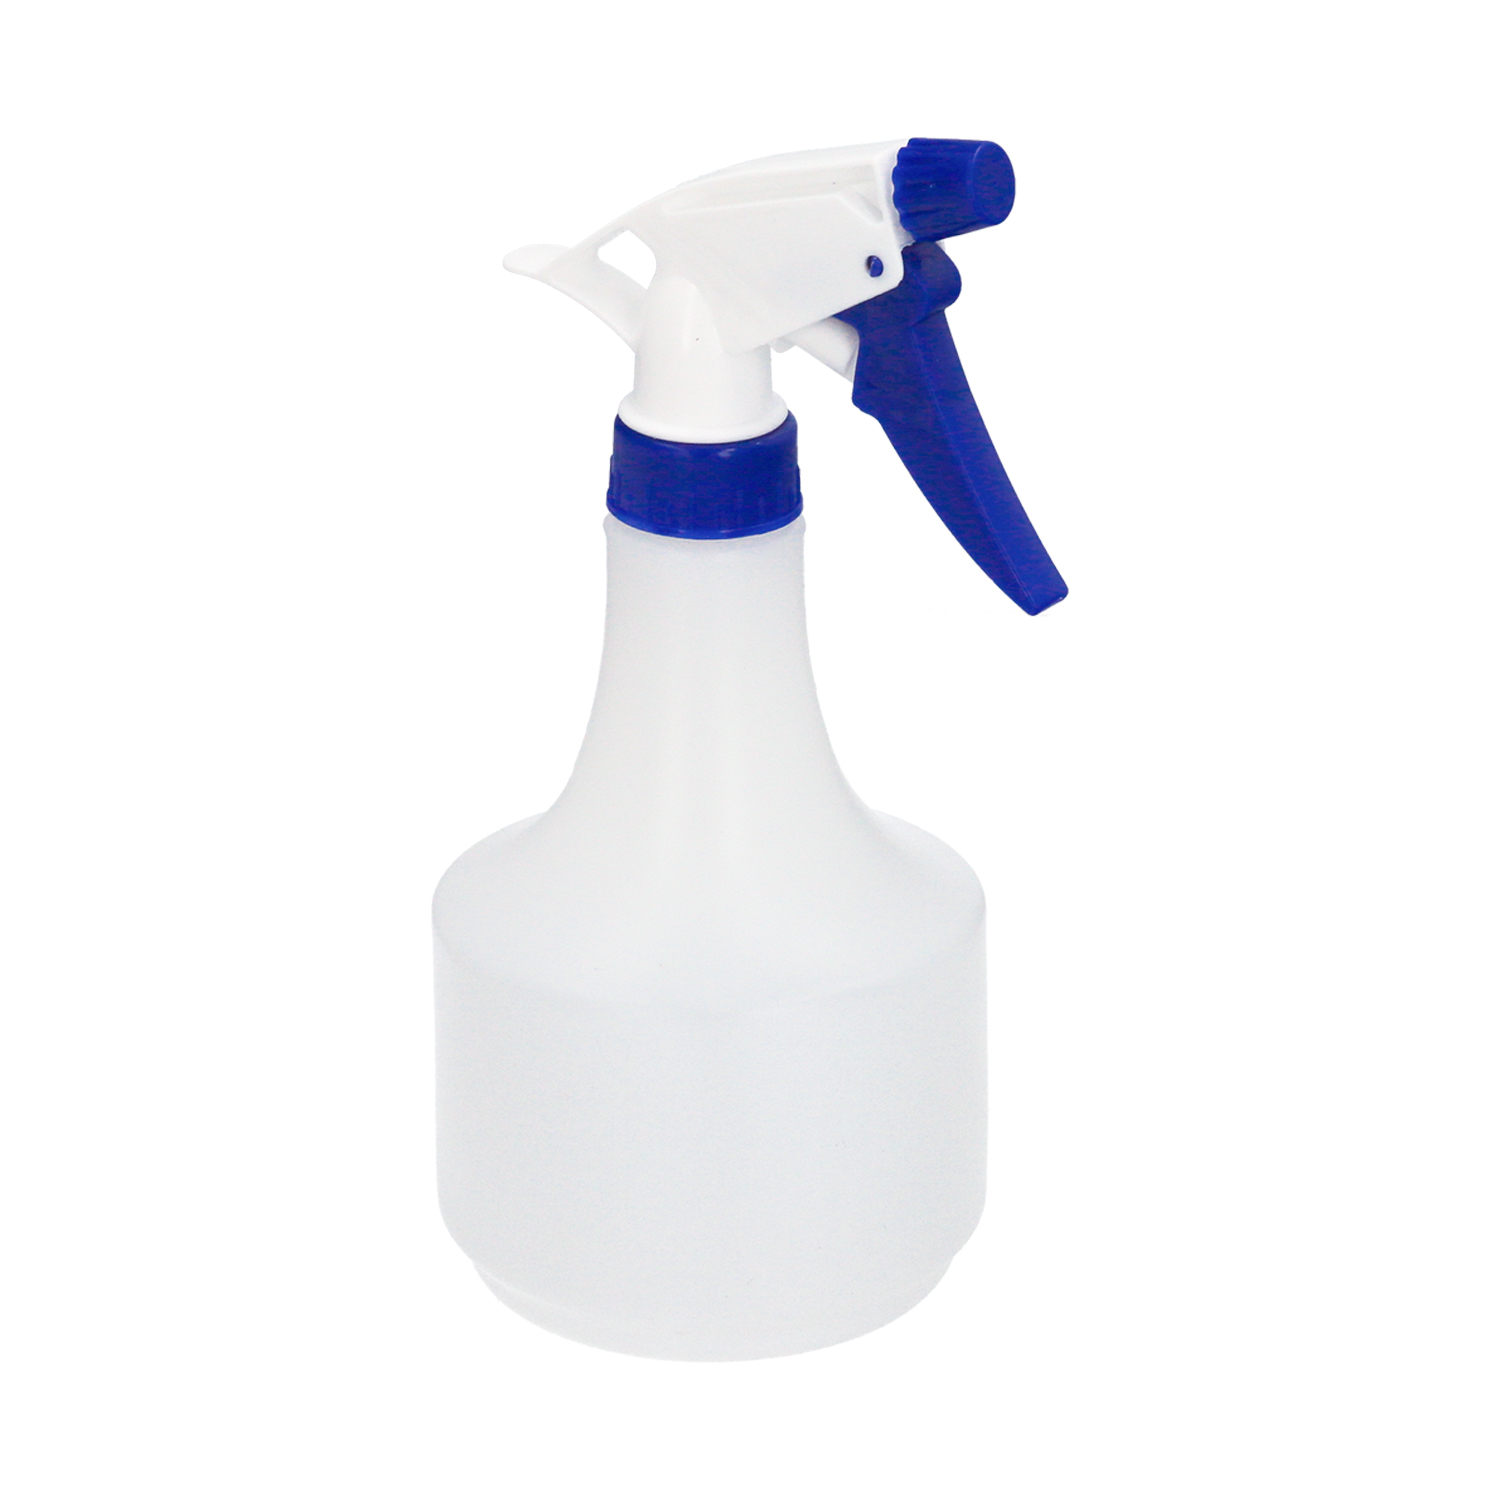 Pulverizador Agua 1 Litro. Spray Pulverizador Boquilla Ajustable, Botella Spray Liquidos, Aceite, Al